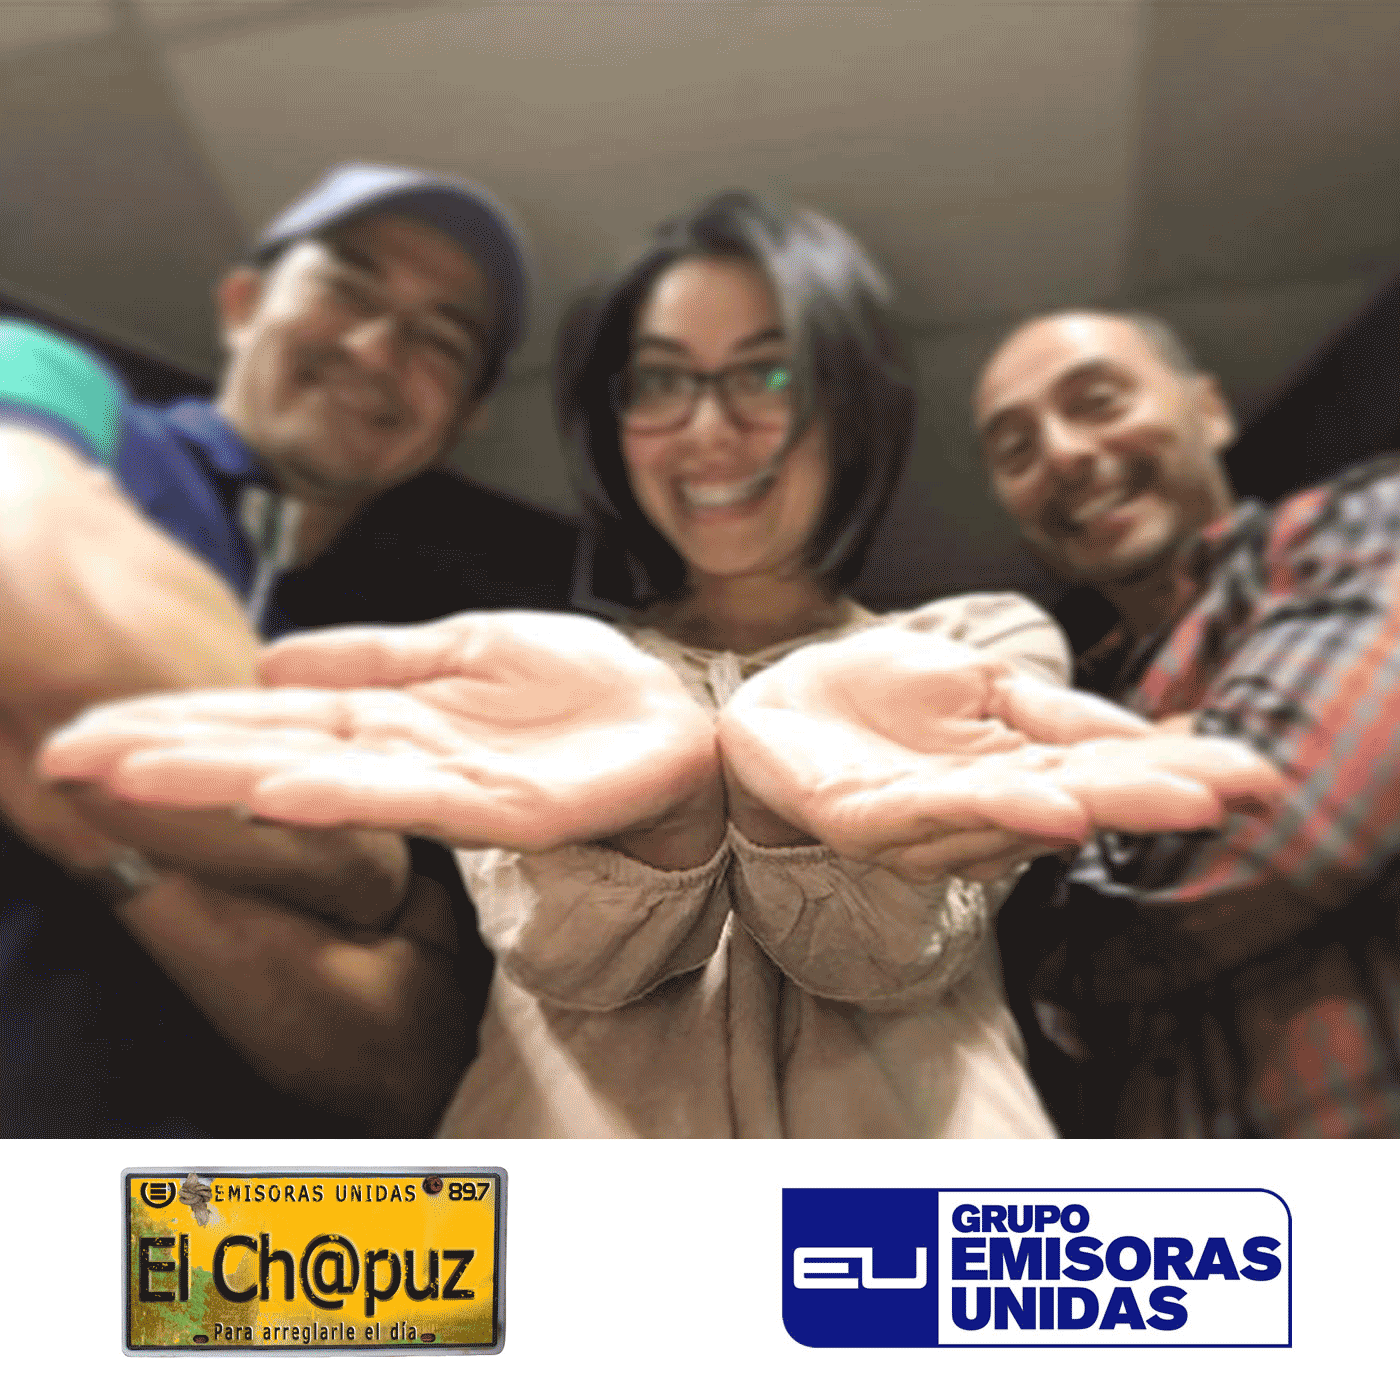 EC030 - El Chapuz - Emisoras unidas - #PreguntasQueArden